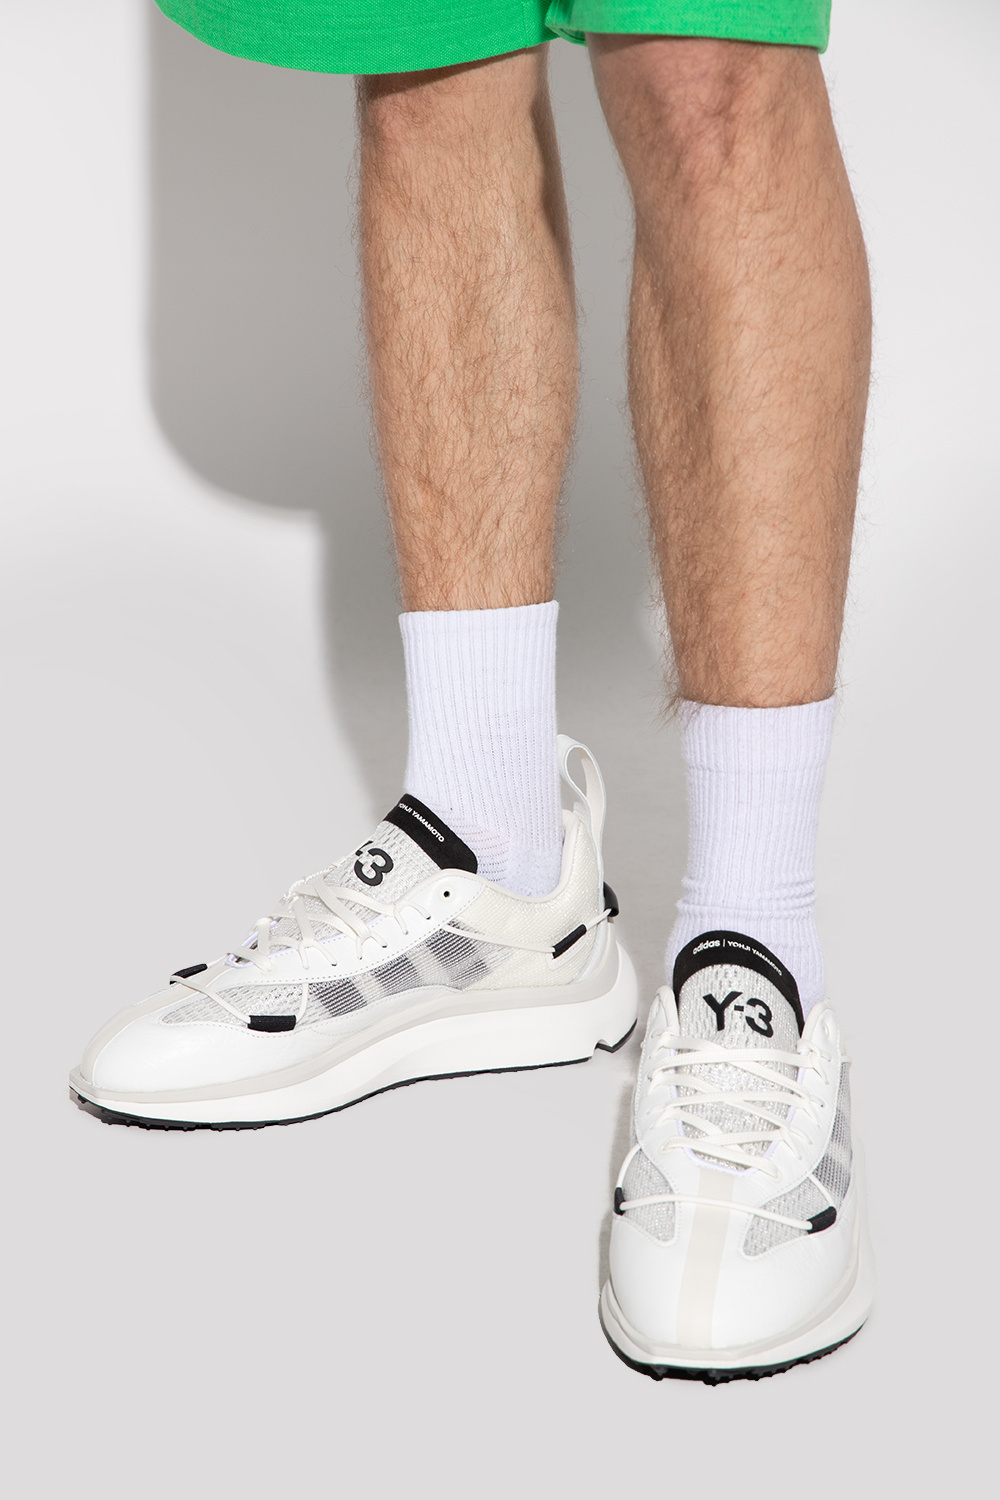 غسول للمنطقه الحساسه Men's Shoes - IetpShops - Y | adidas samoa mens black sneakers s ... غسول للمنطقه الحساسه